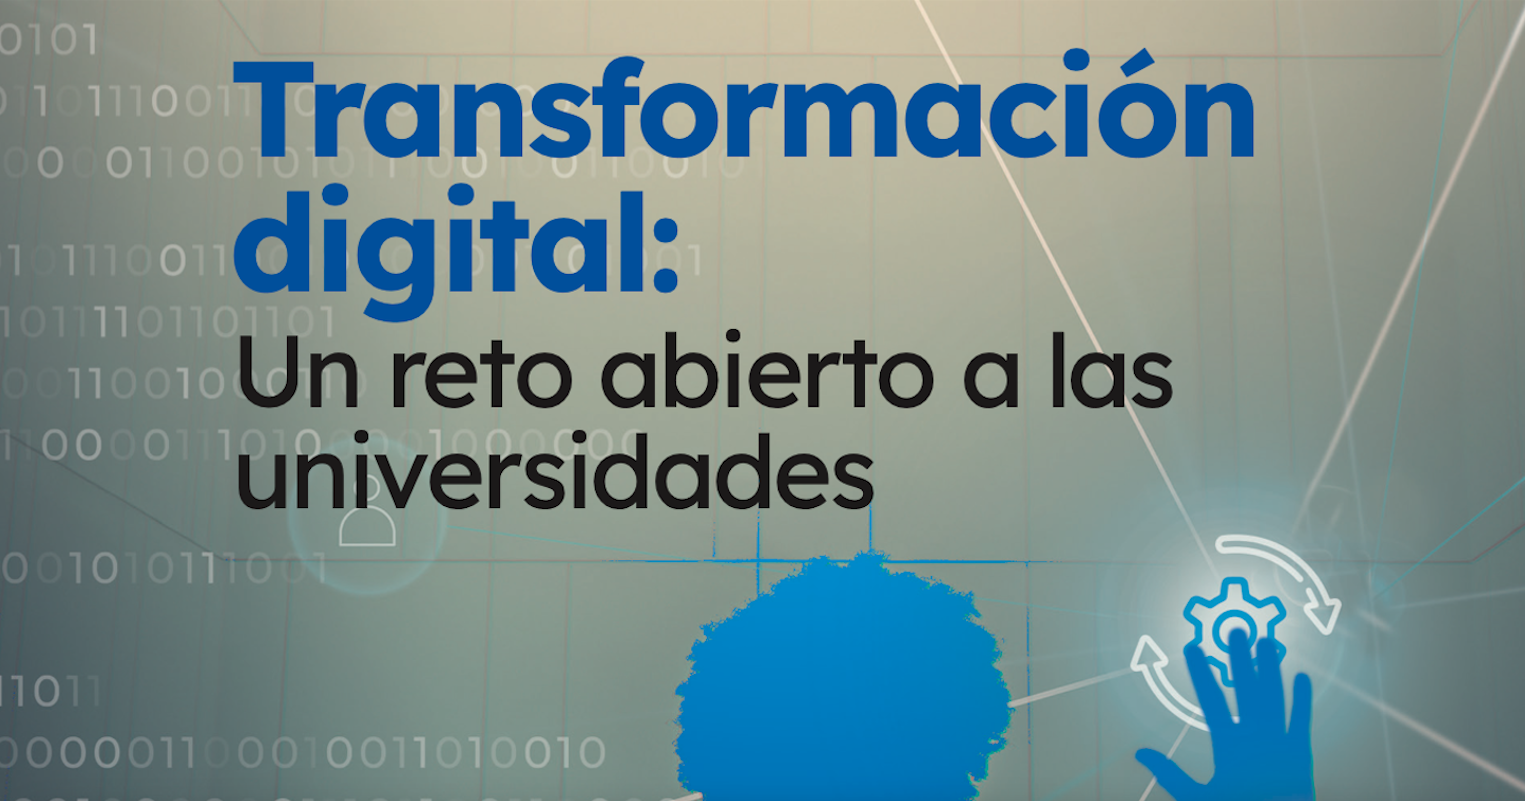 El Centro Interuniversitario de Desarrollo, CINDA, se complace en presentar su último libro, titulado "Transformación Digital: Un reto abierto a las universidades".